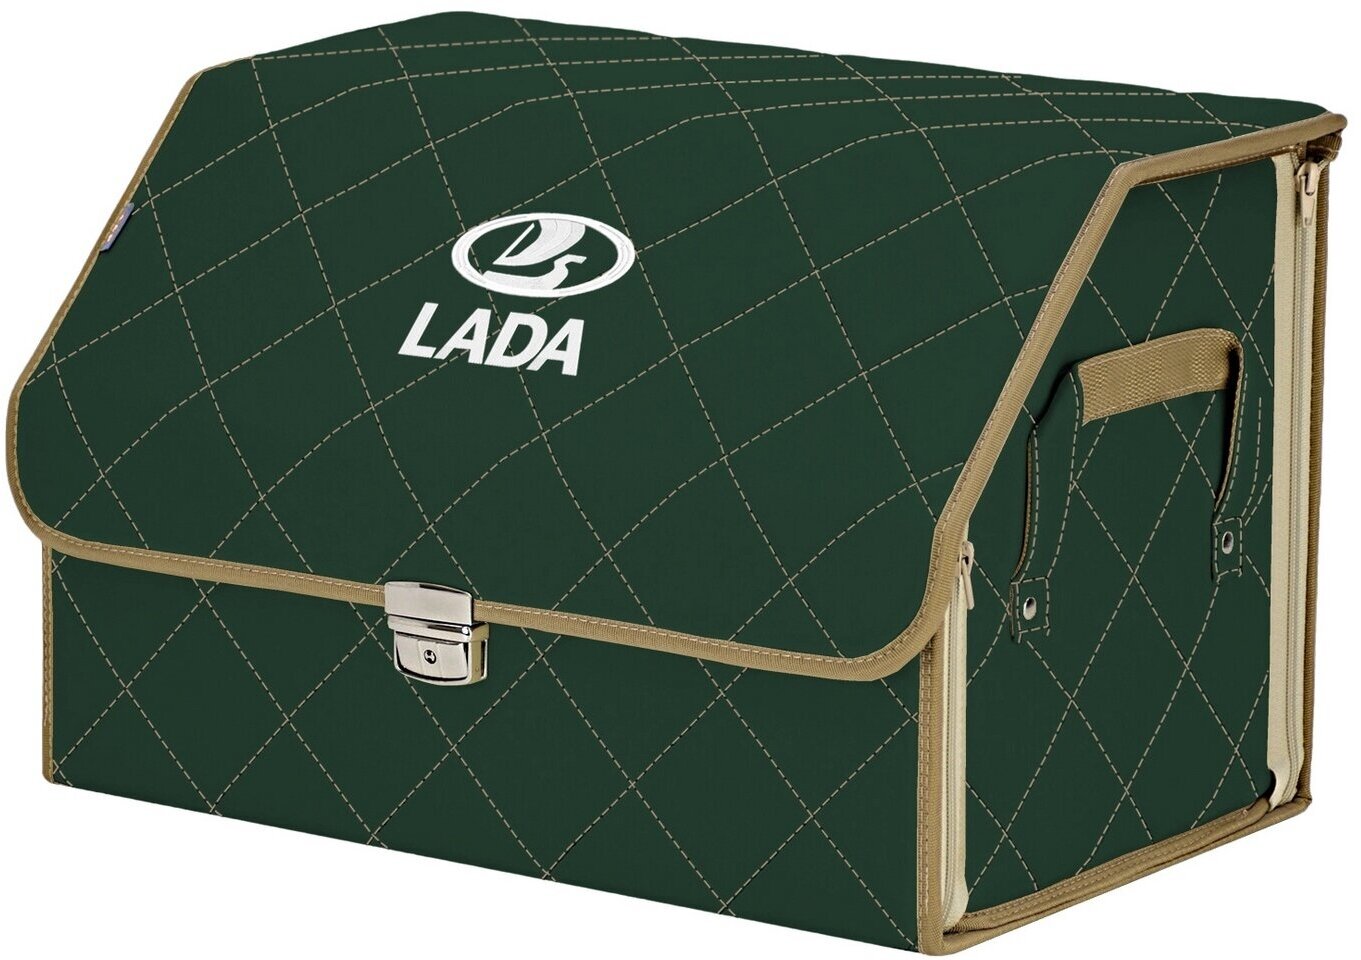 Органайзер-саквояж в багажник "Союз Премиум" (размер L). Цвет: зеленый с бежевой прострочкой Ромб и вышивкой LADA (лада).